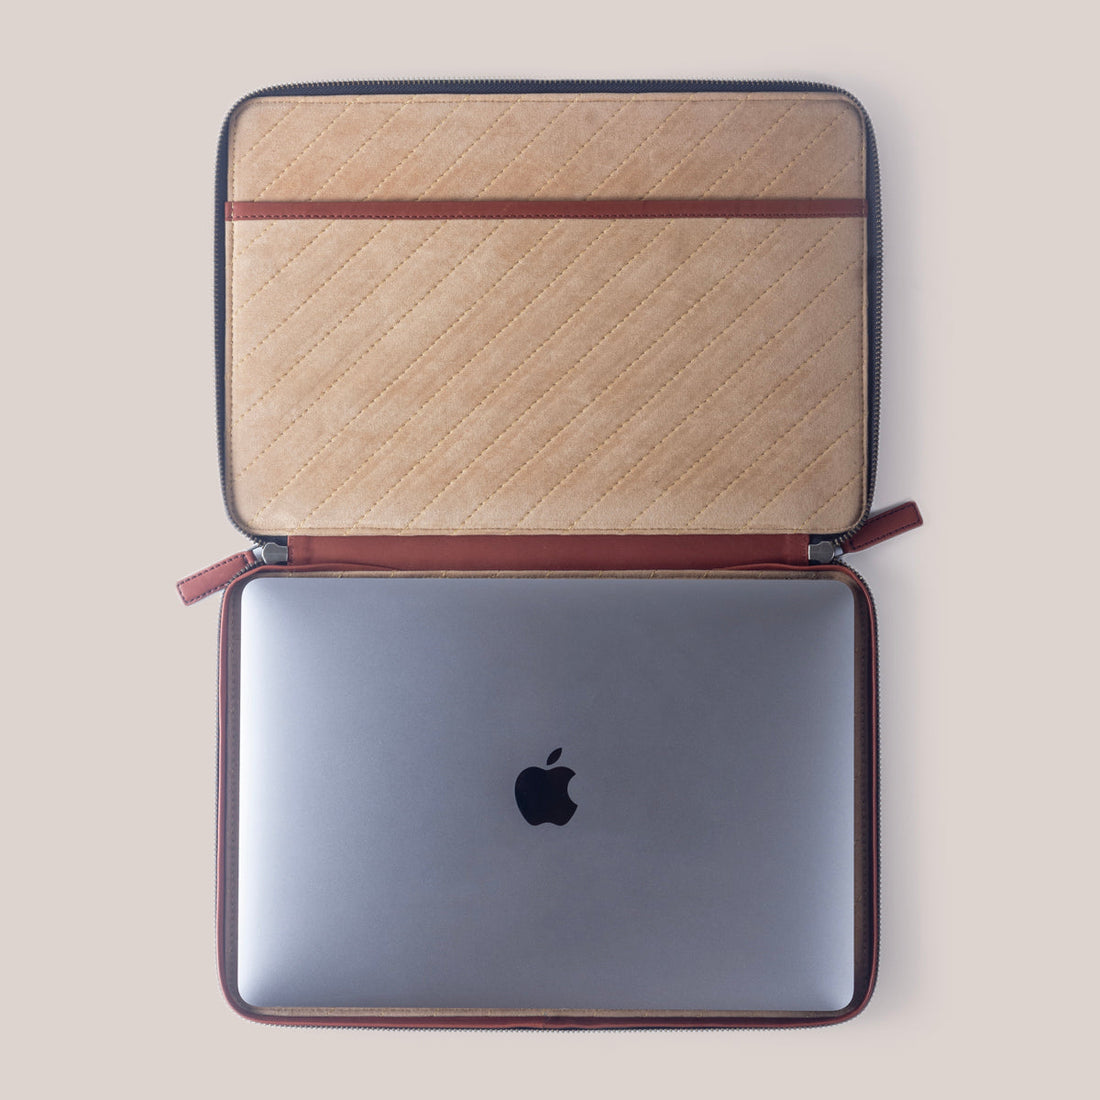 DELL XPS 13 Plus Zippered Laptop Case - Vintage Tan